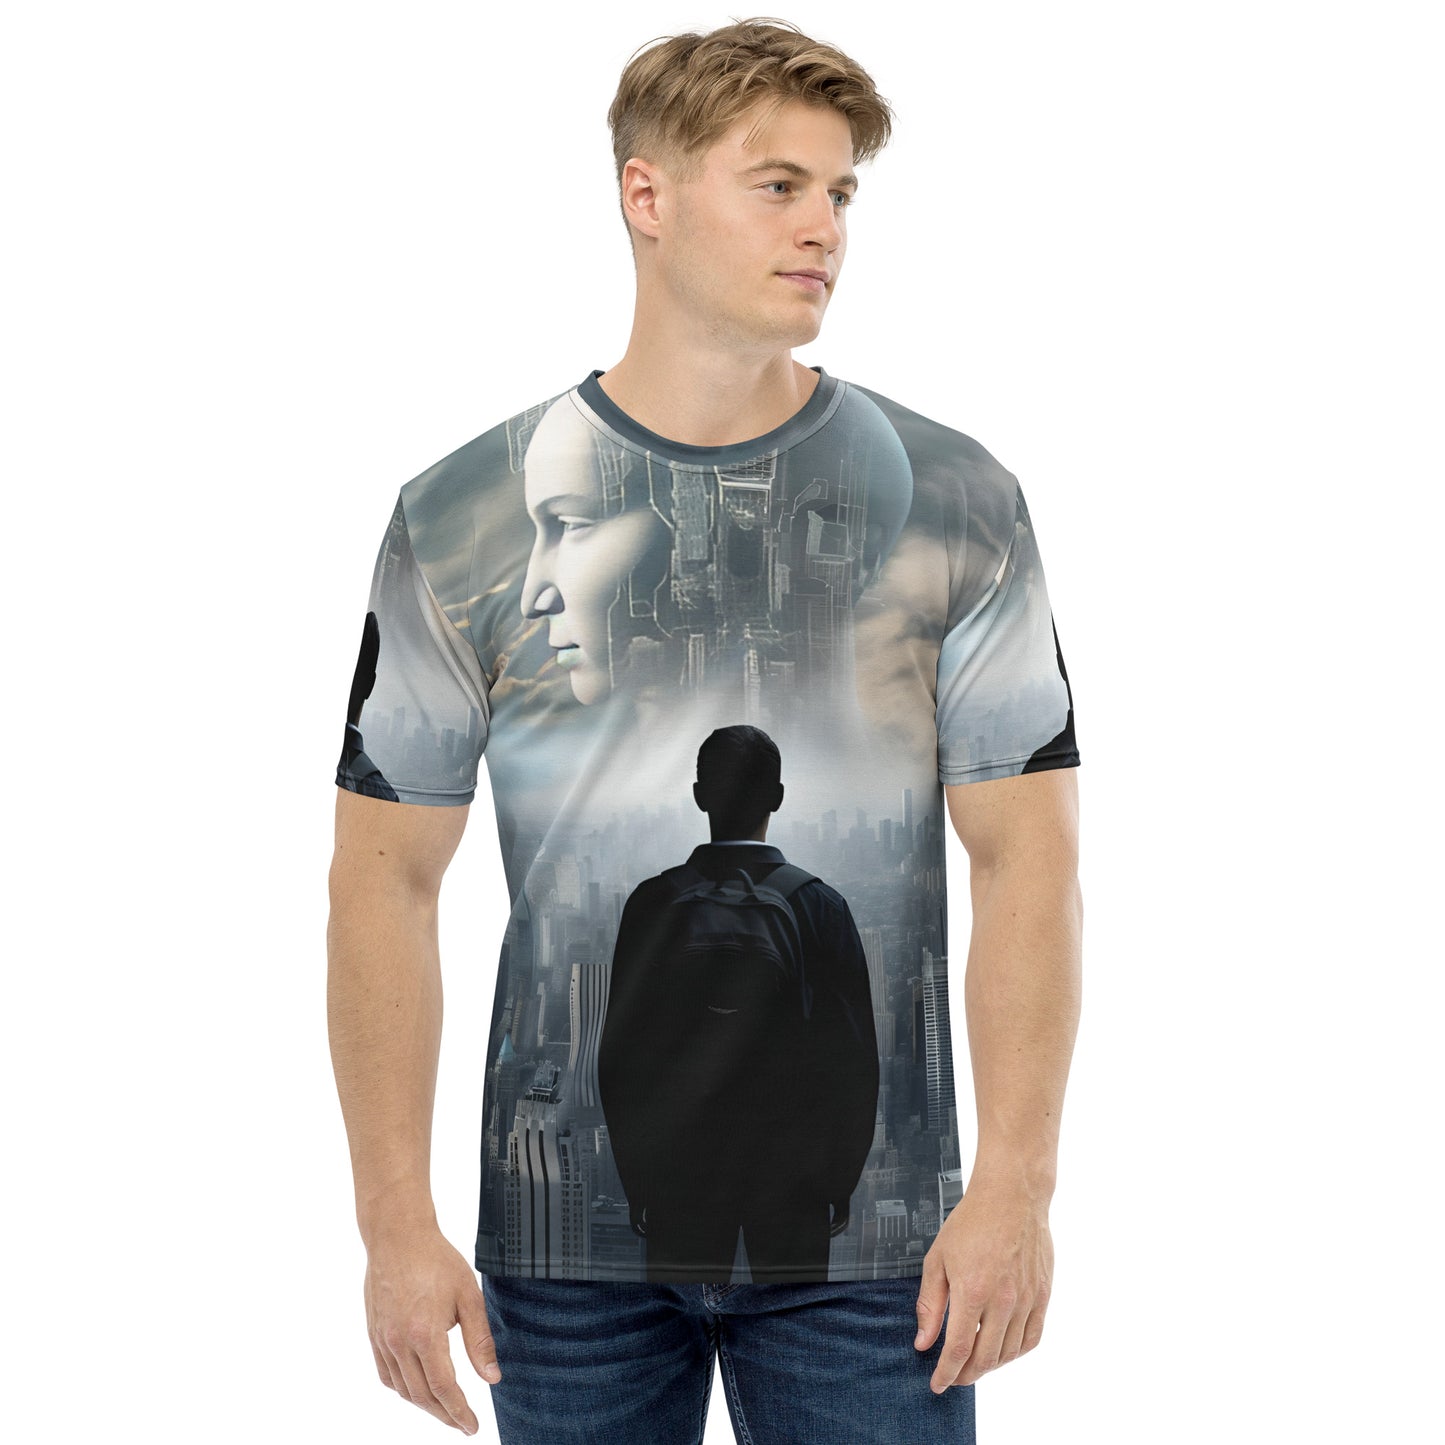 AI Ascension Men's t-shirt